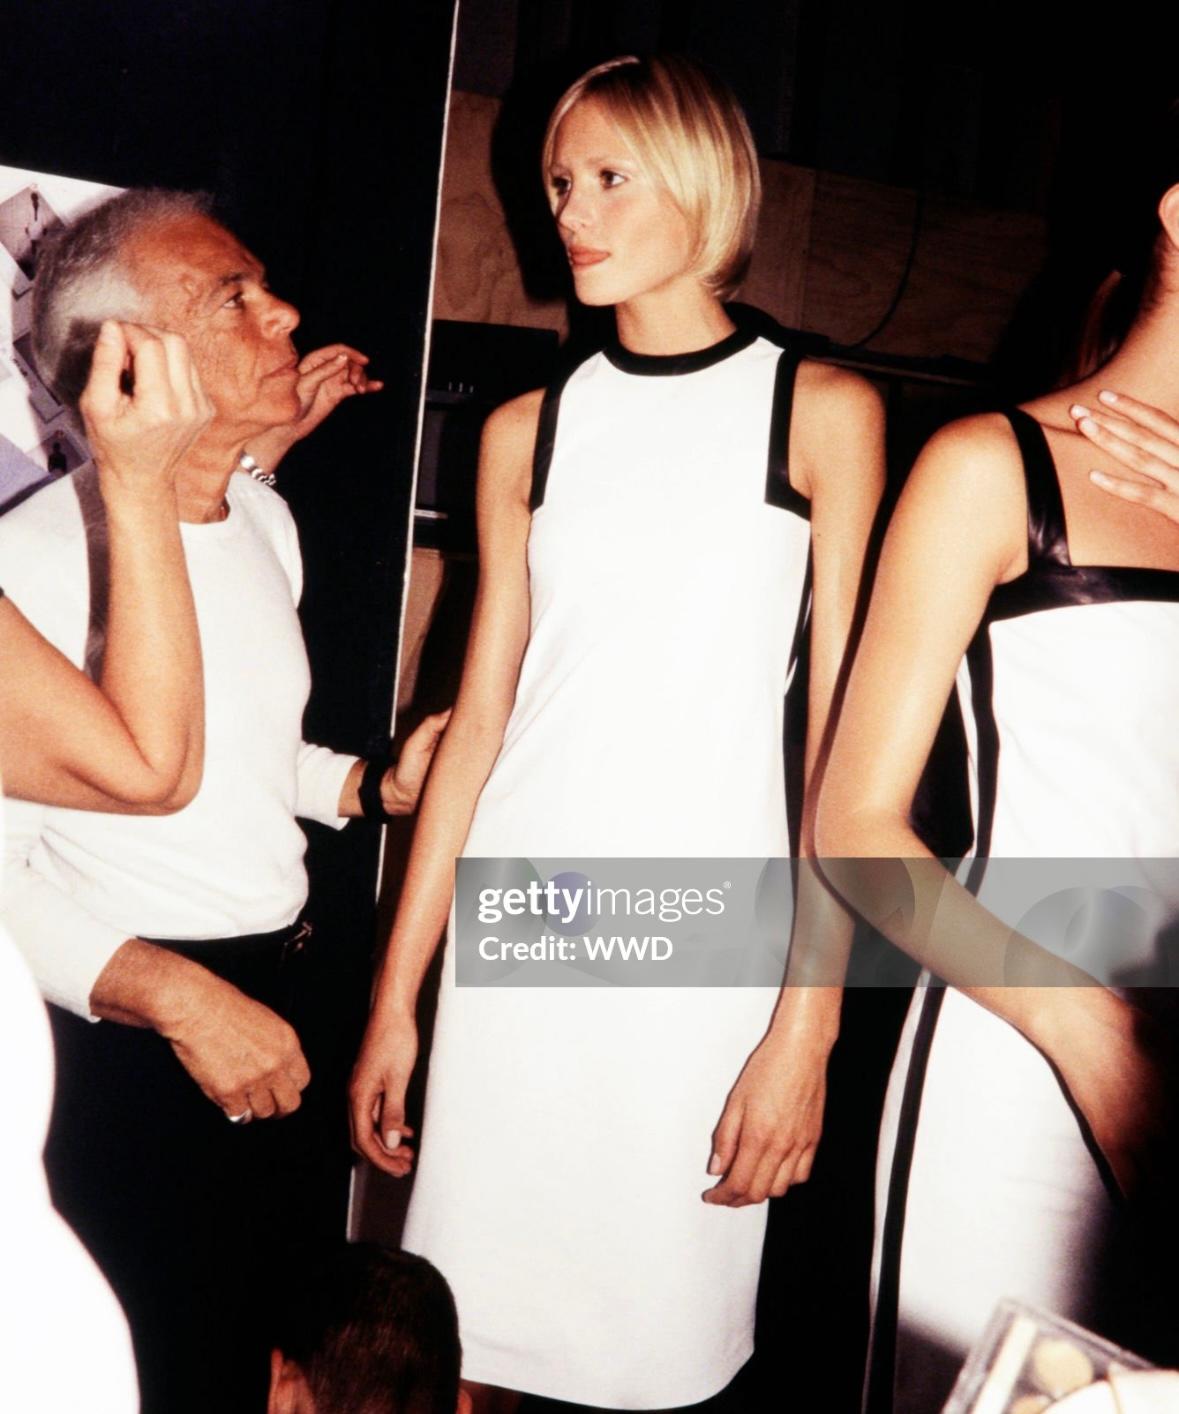 Voici une superbe robe en cuir noir et blanc de Ralph Lauren, issue de la collection printemps-été 2001. La version inversée de cette robe a ouvert le défilé de la saison en tant que look 1, porté par Yfke Sturm. Conçue en cuir noir souple, cette